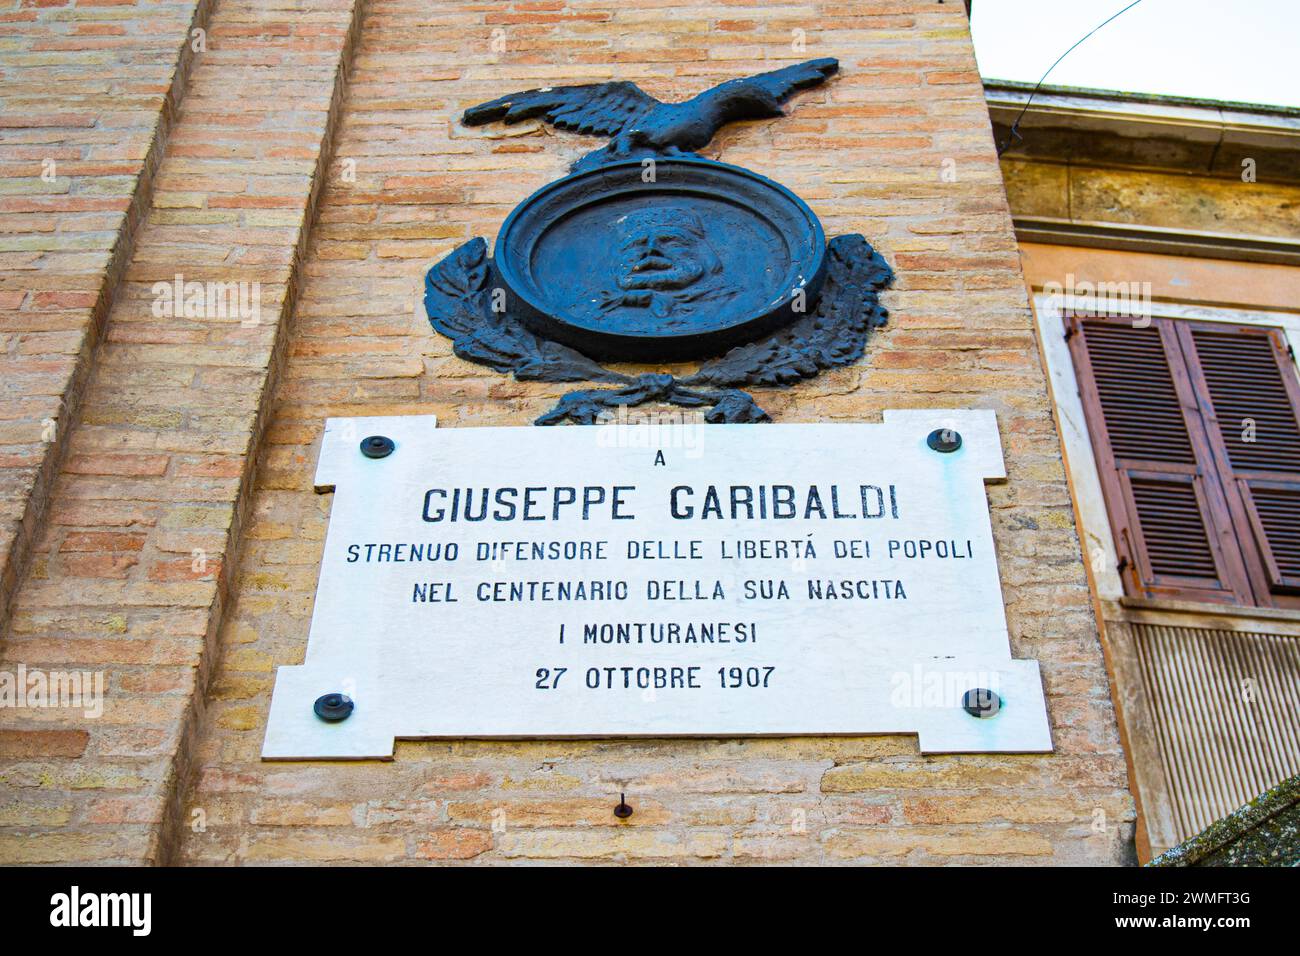 Città di Monte Urano - Targa dedicata a Giuseppe Garibaldi, situata nella parte laterale della porta dell'orologio. Omaggio al risorgimento italiano. Stock Photo